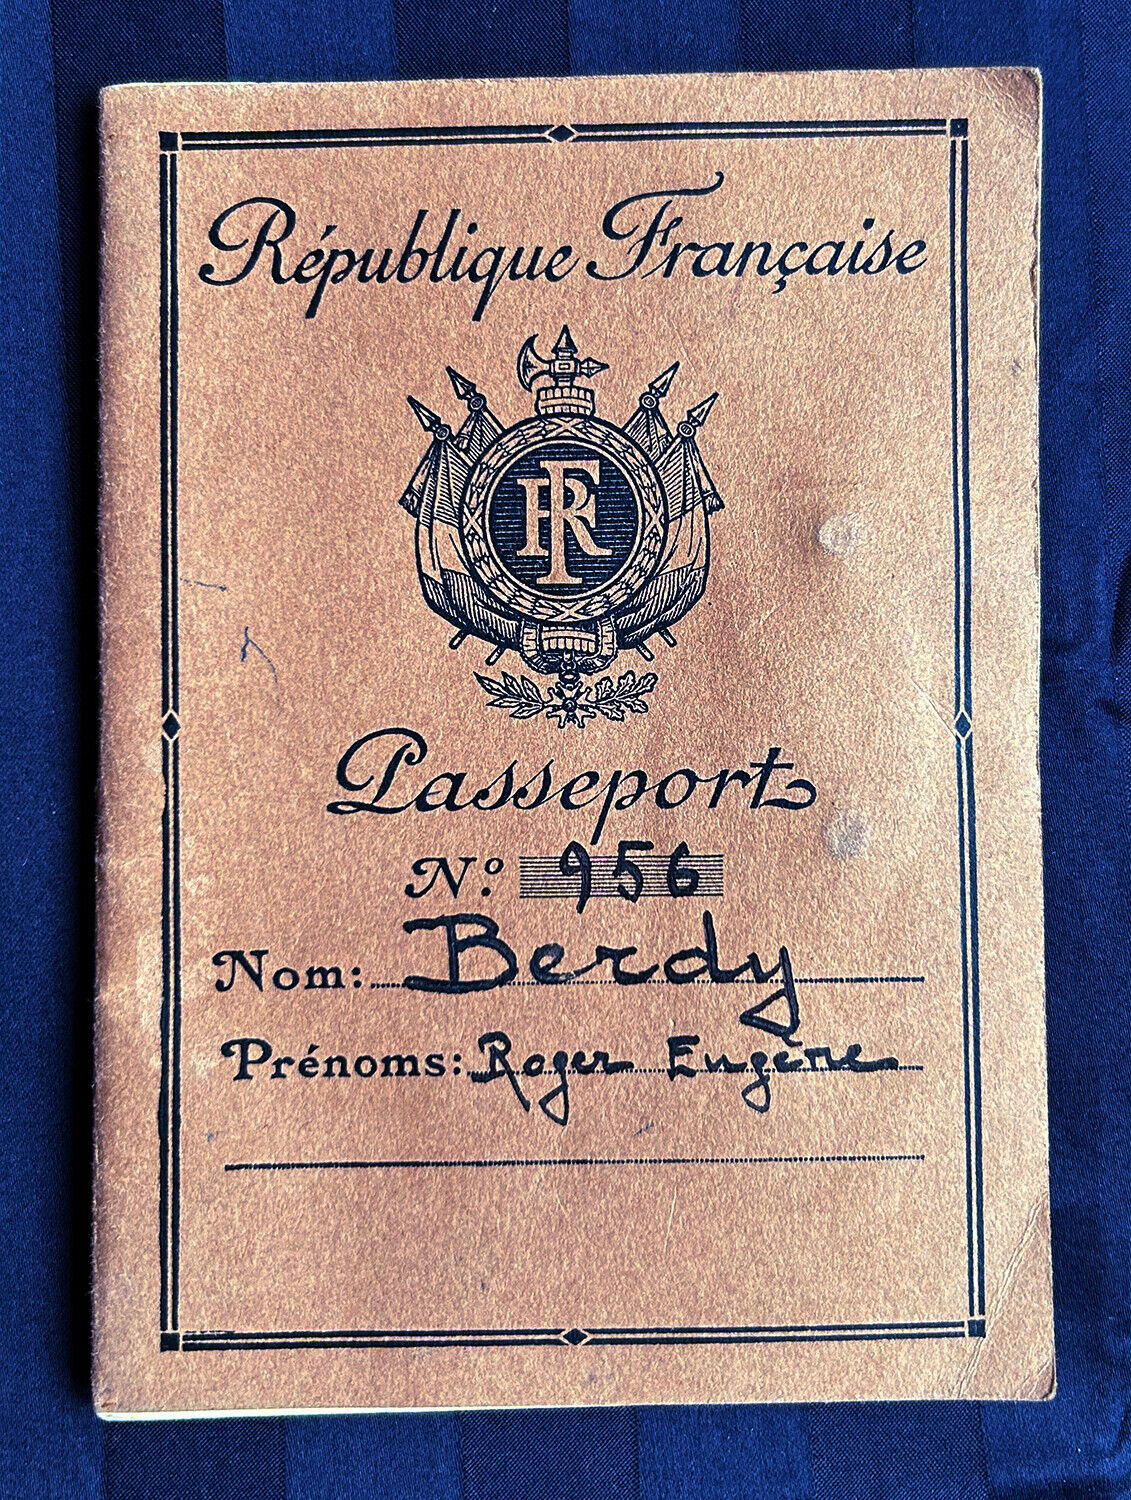 Vintage 1950s Passport Republique Francaise French Man Photograph